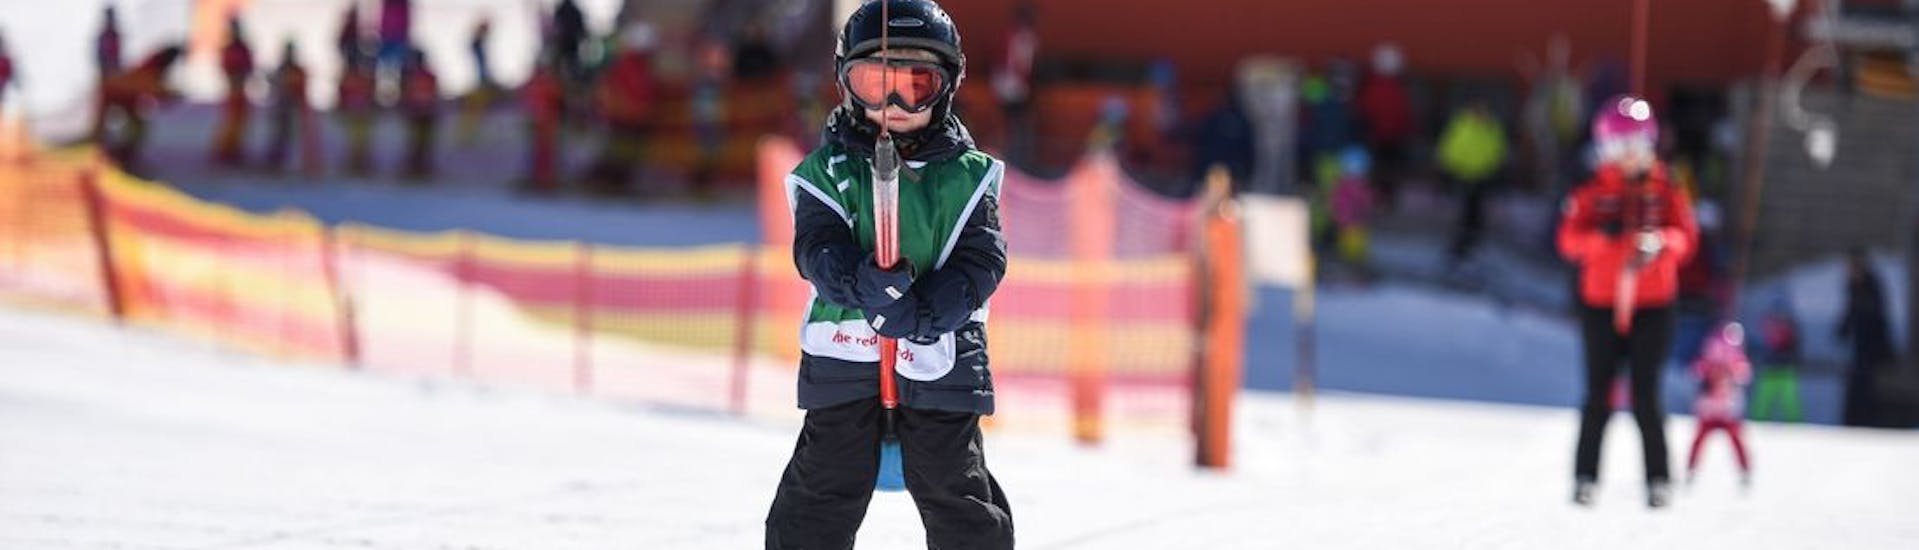 Un petit garçon apprend à se servir d'un téléski lors d'un cours particulier de ski pour enfants organisé par l'École suisse de ski de St-Moritz the Red Legends.